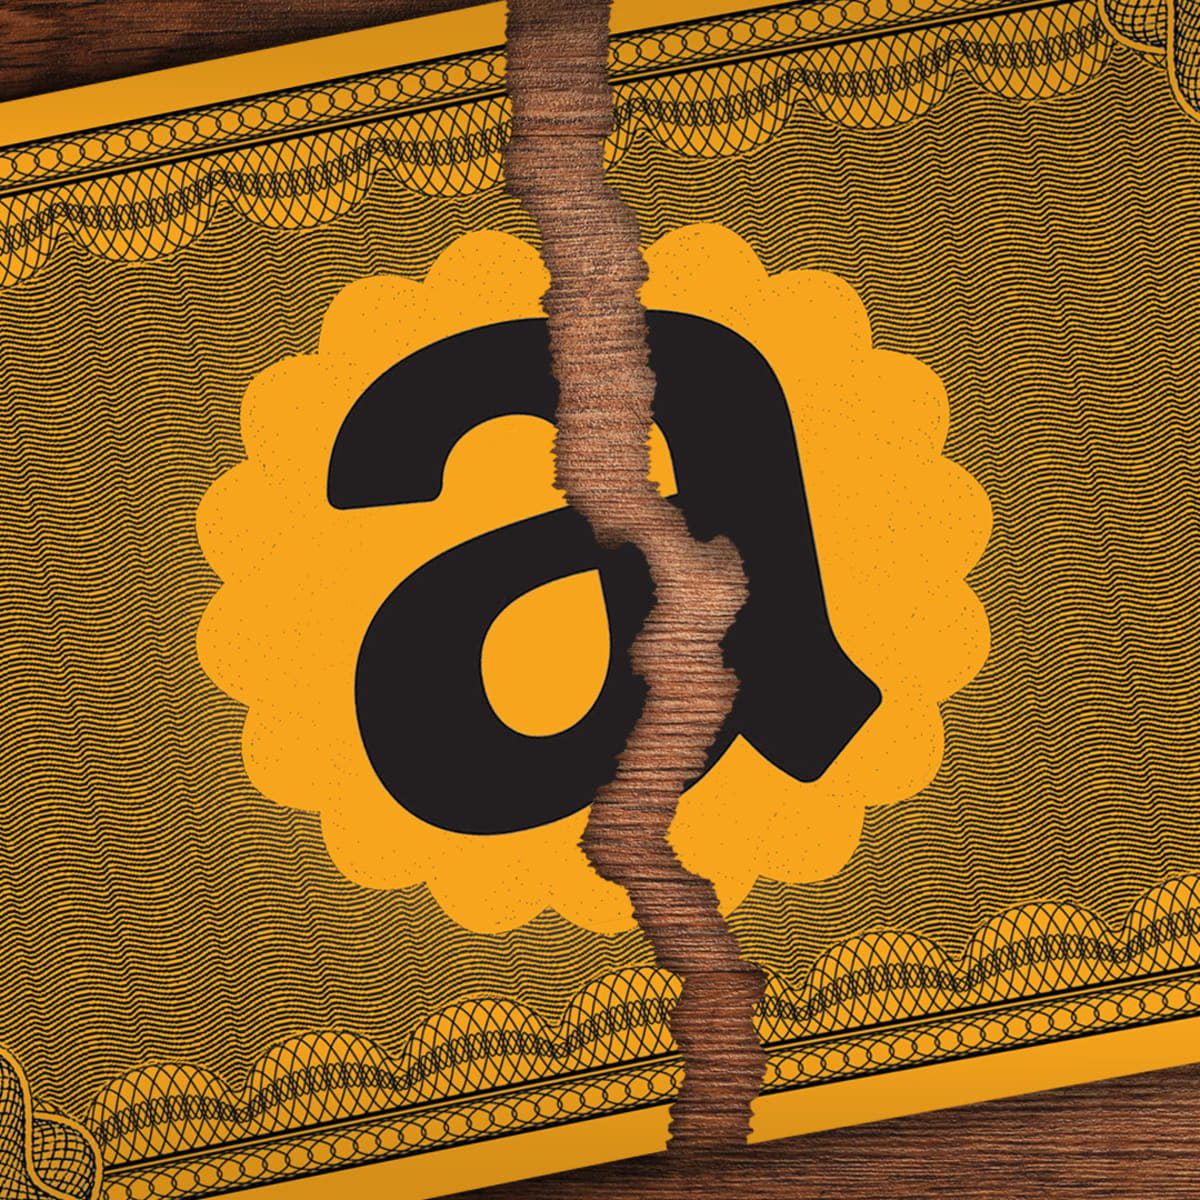 Il frazionamento azionario di Amazon è avvenuto oggi: cosa significa e cosa accadrà ora?